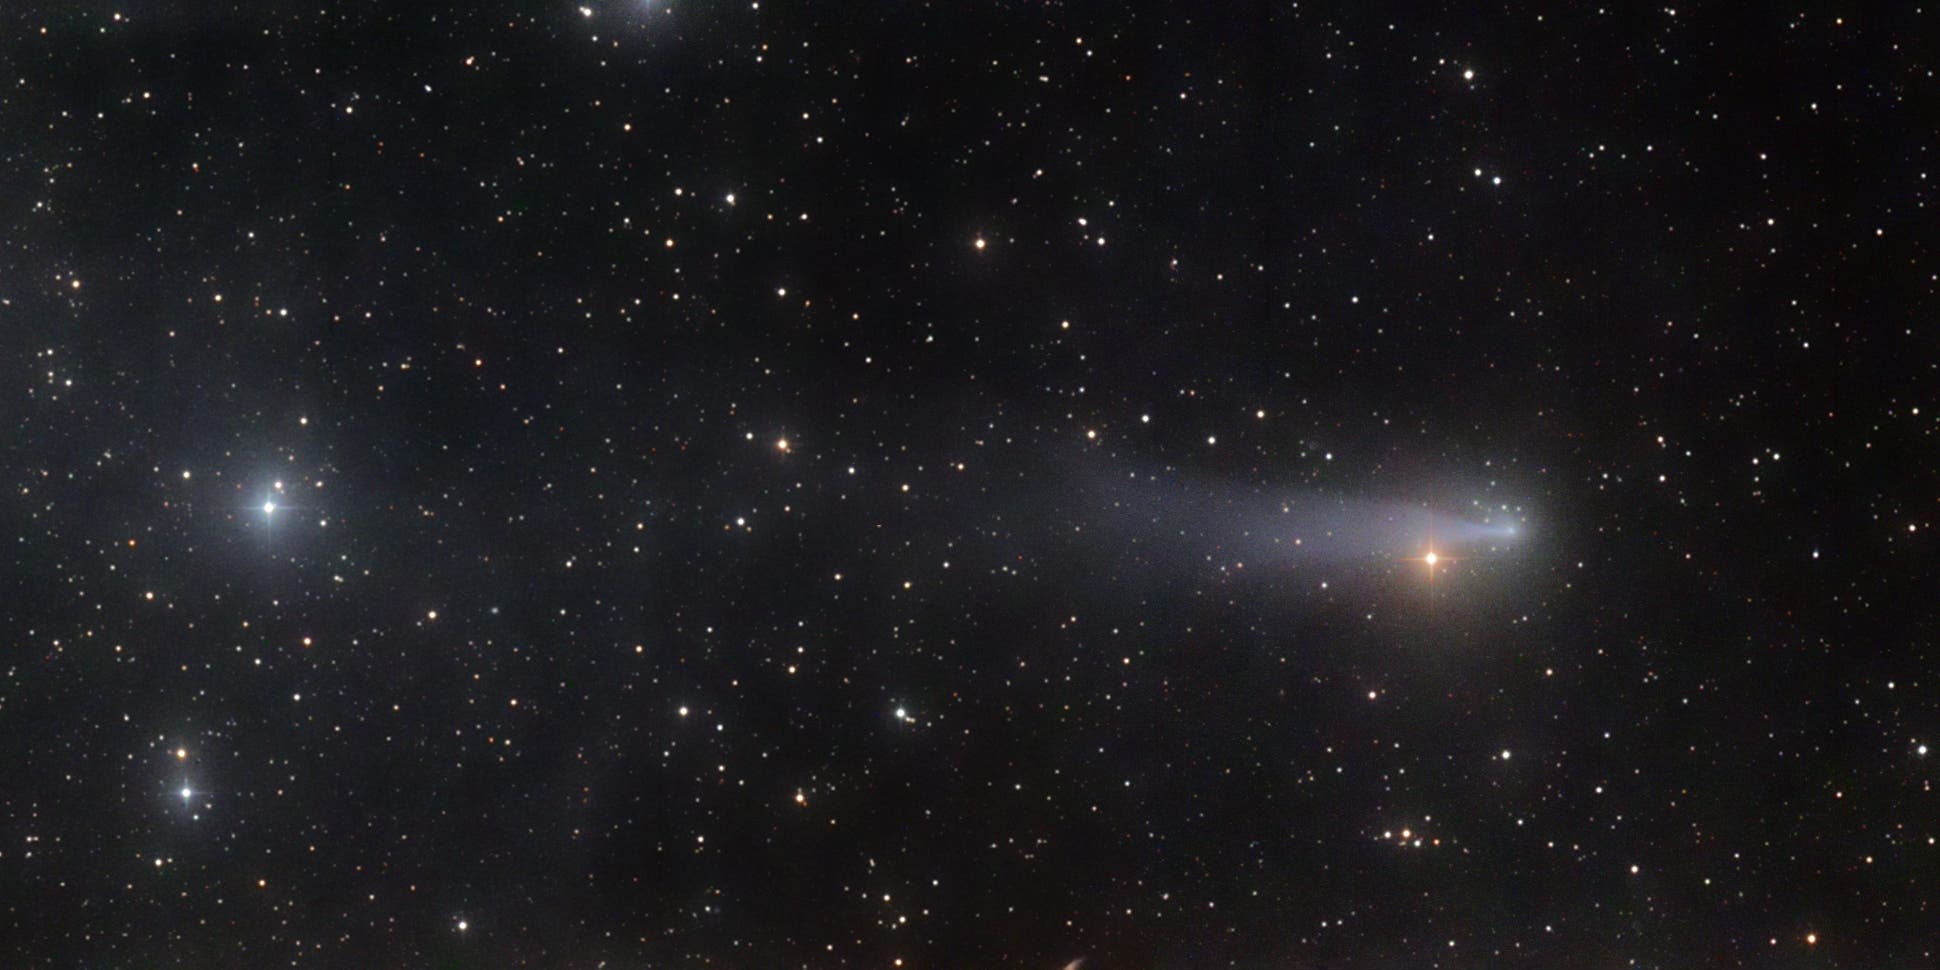 Comet C/2016 R2 PANSTARRS